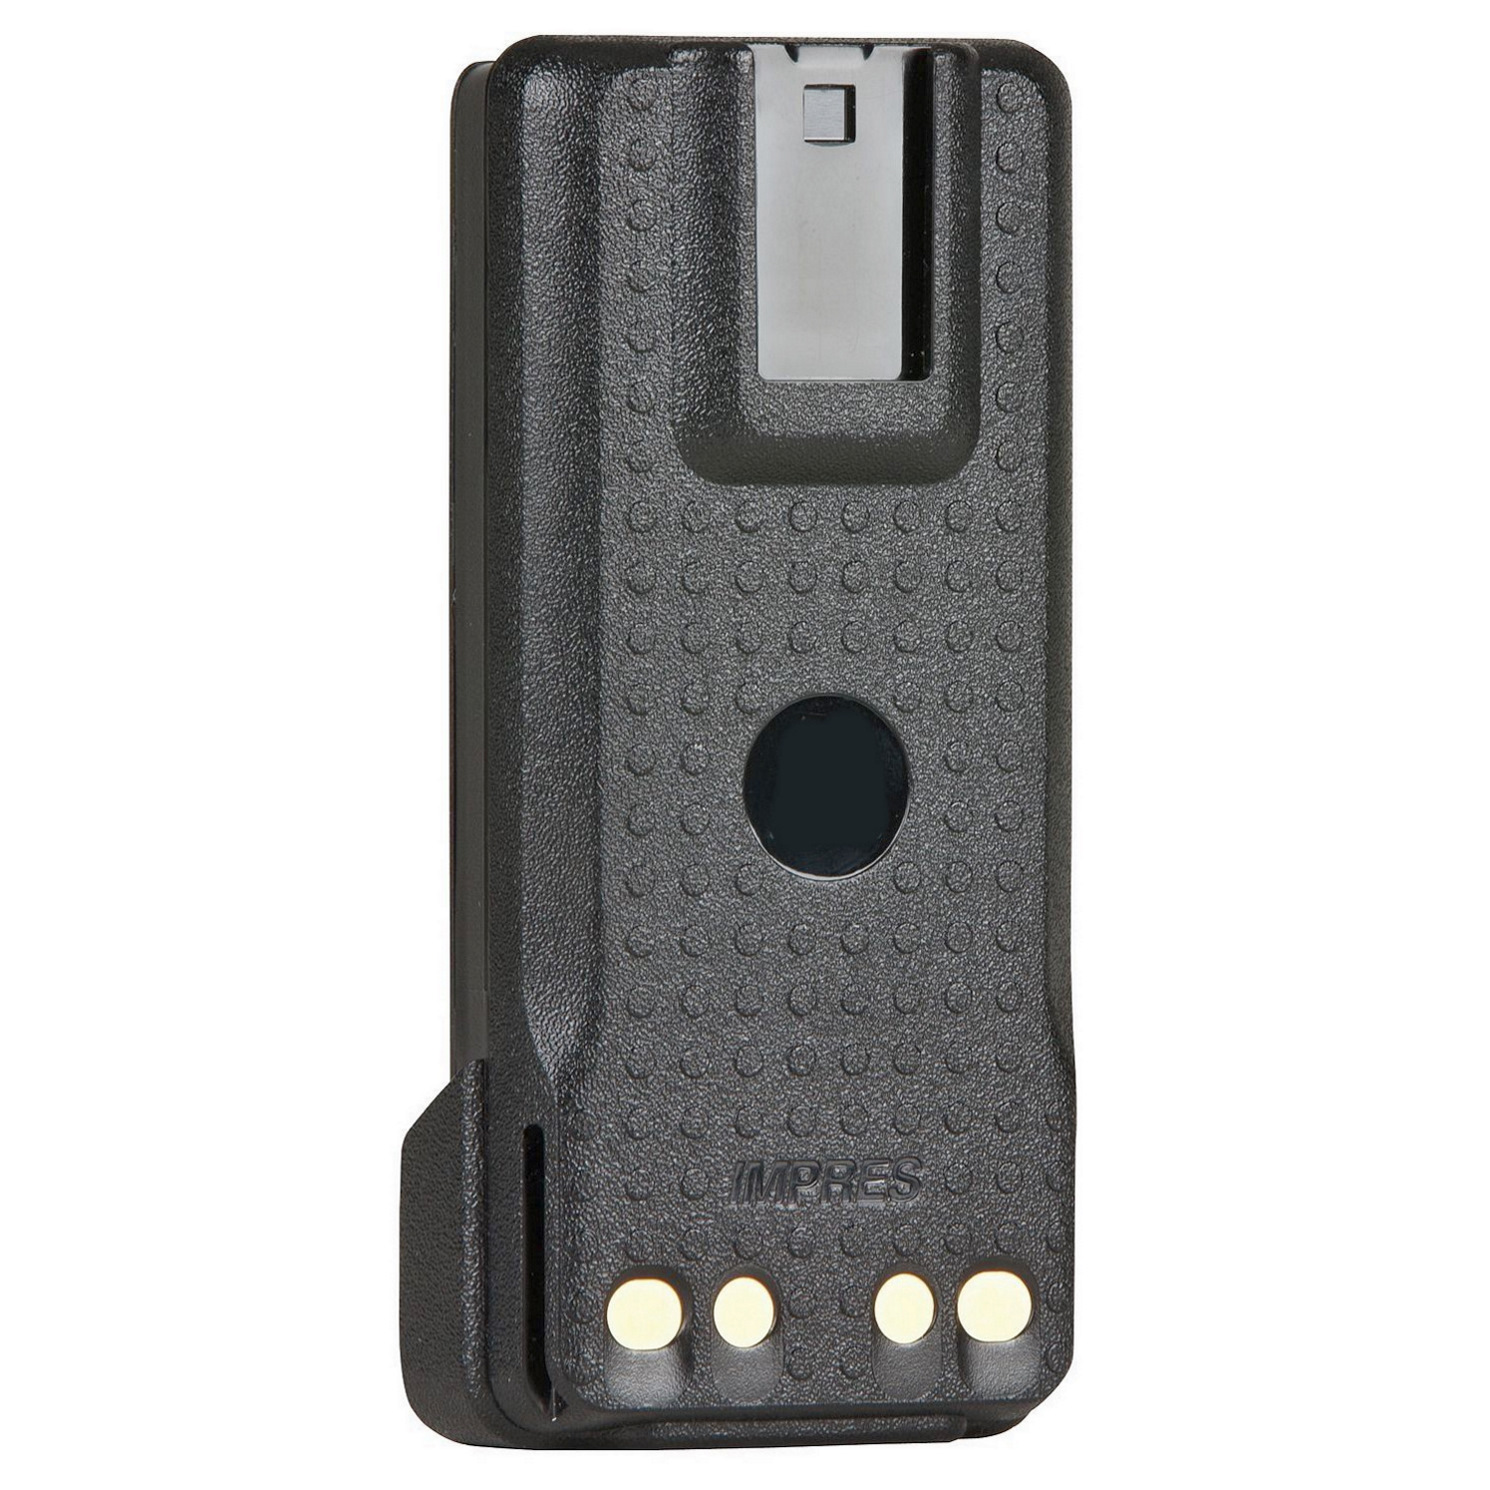 Аккумулятор PMNN4407 для р/ст Motorola (Китай), фото